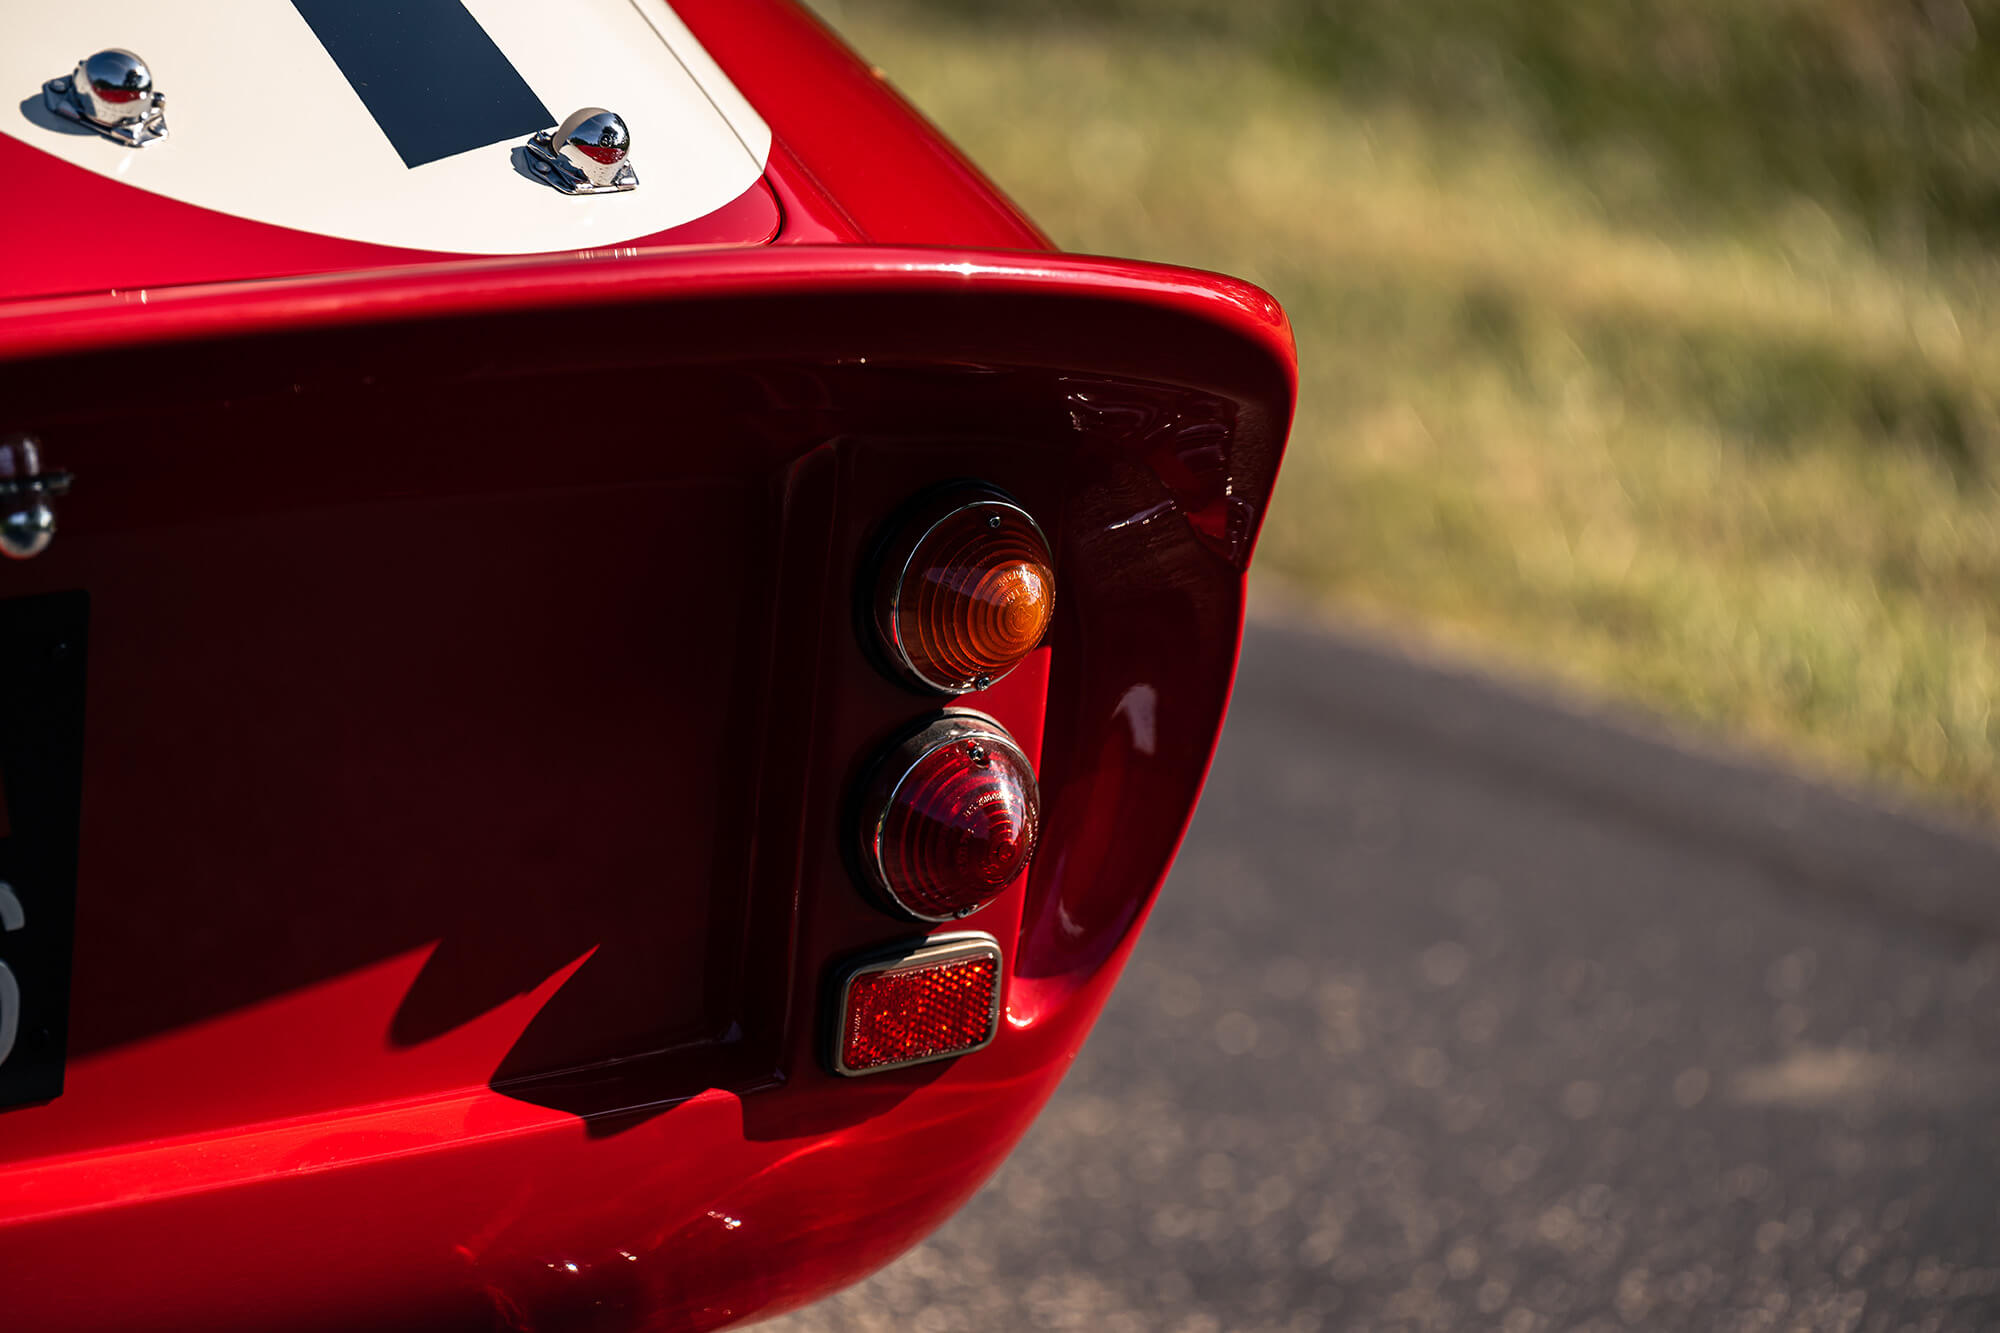 1962 Ferrari 330 LM / 250 GTO by Scaglietti